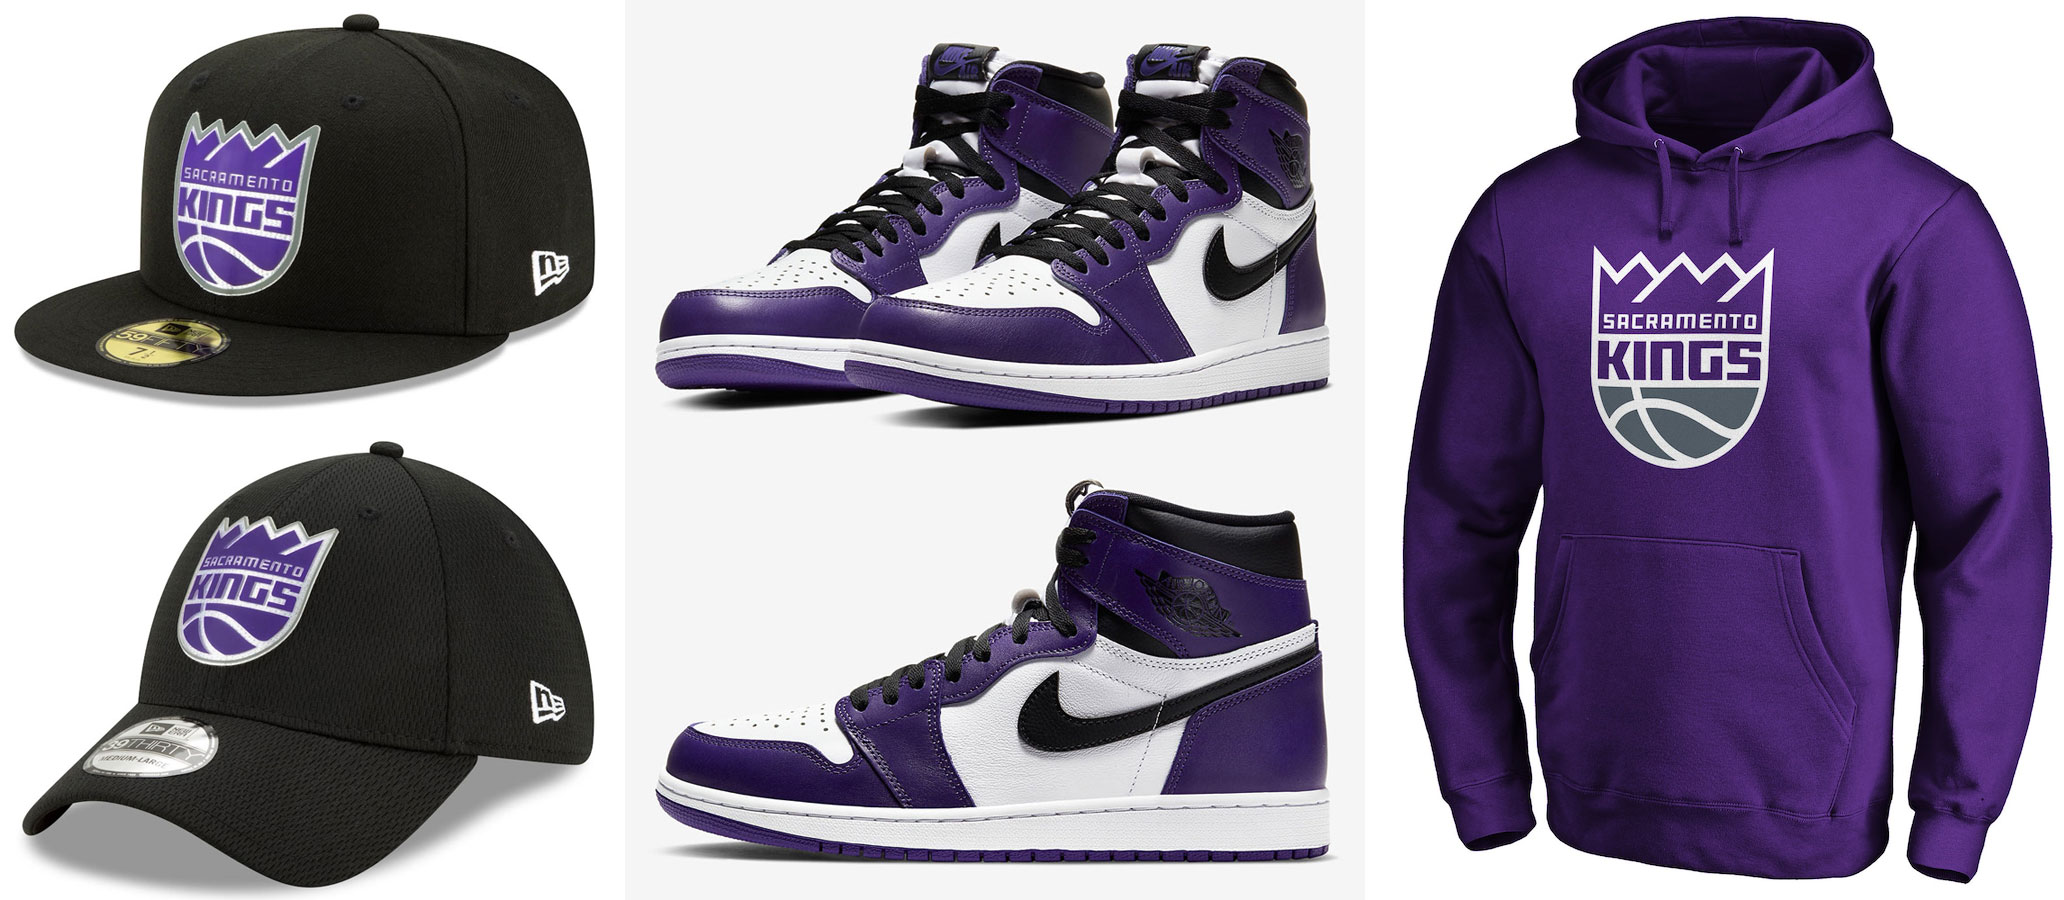 jordan 1 court purple outfits